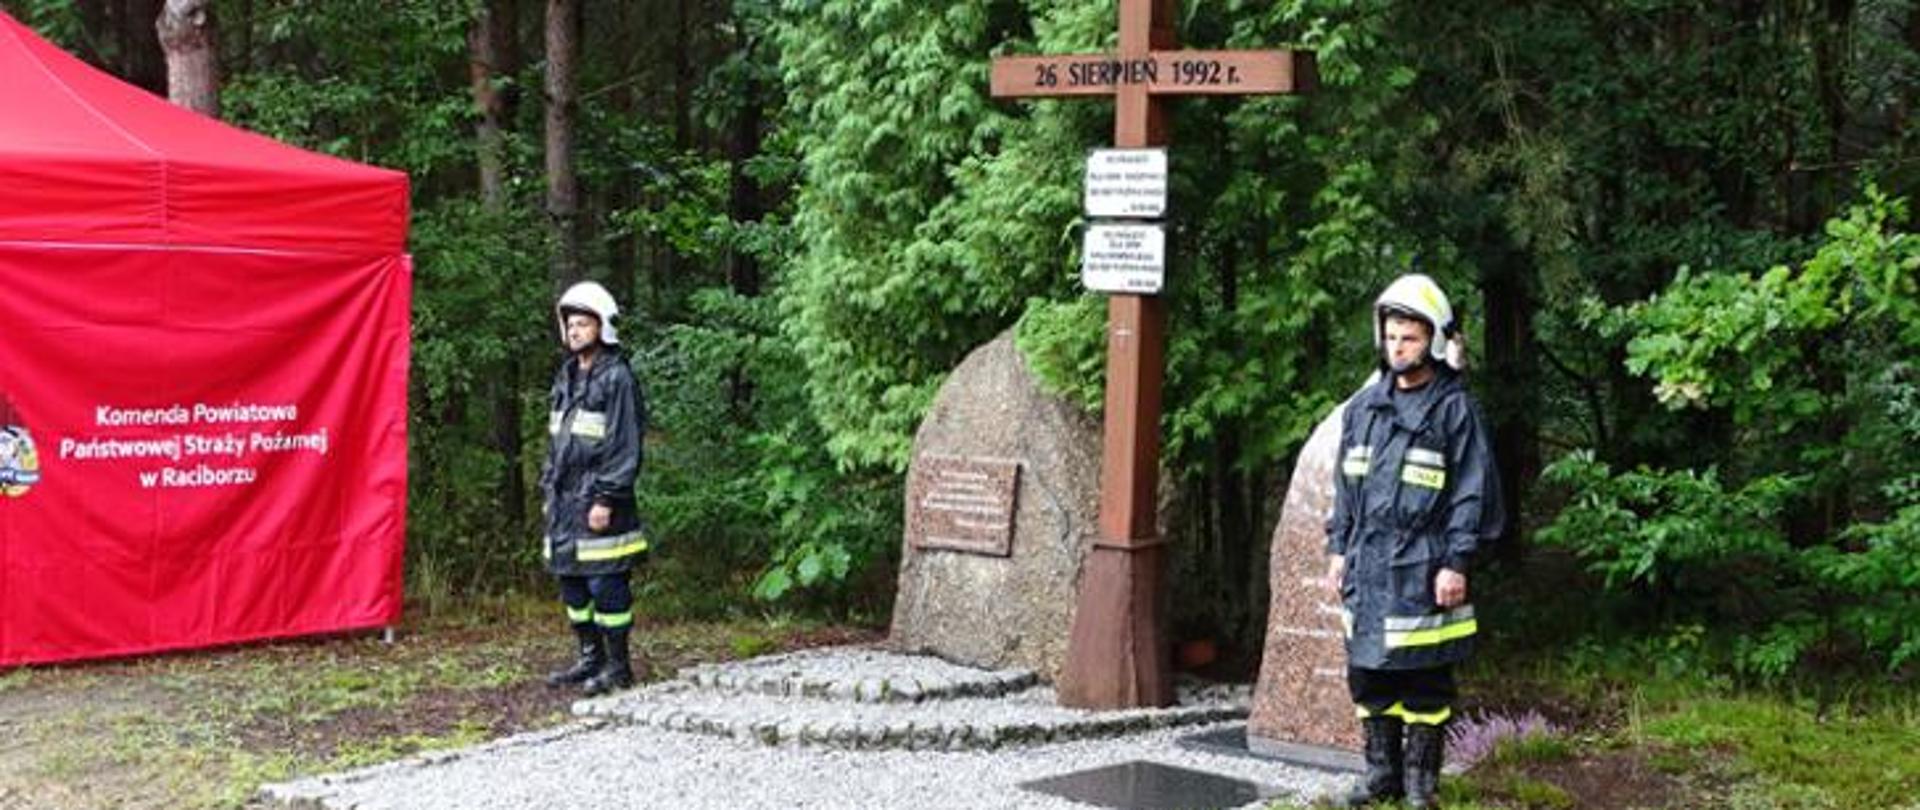 Strażacy w ubraniach specjalnych stojący po obu stronach pomnika upamiętniającego ofiary pożaru w Kuźni Raciborskiej 